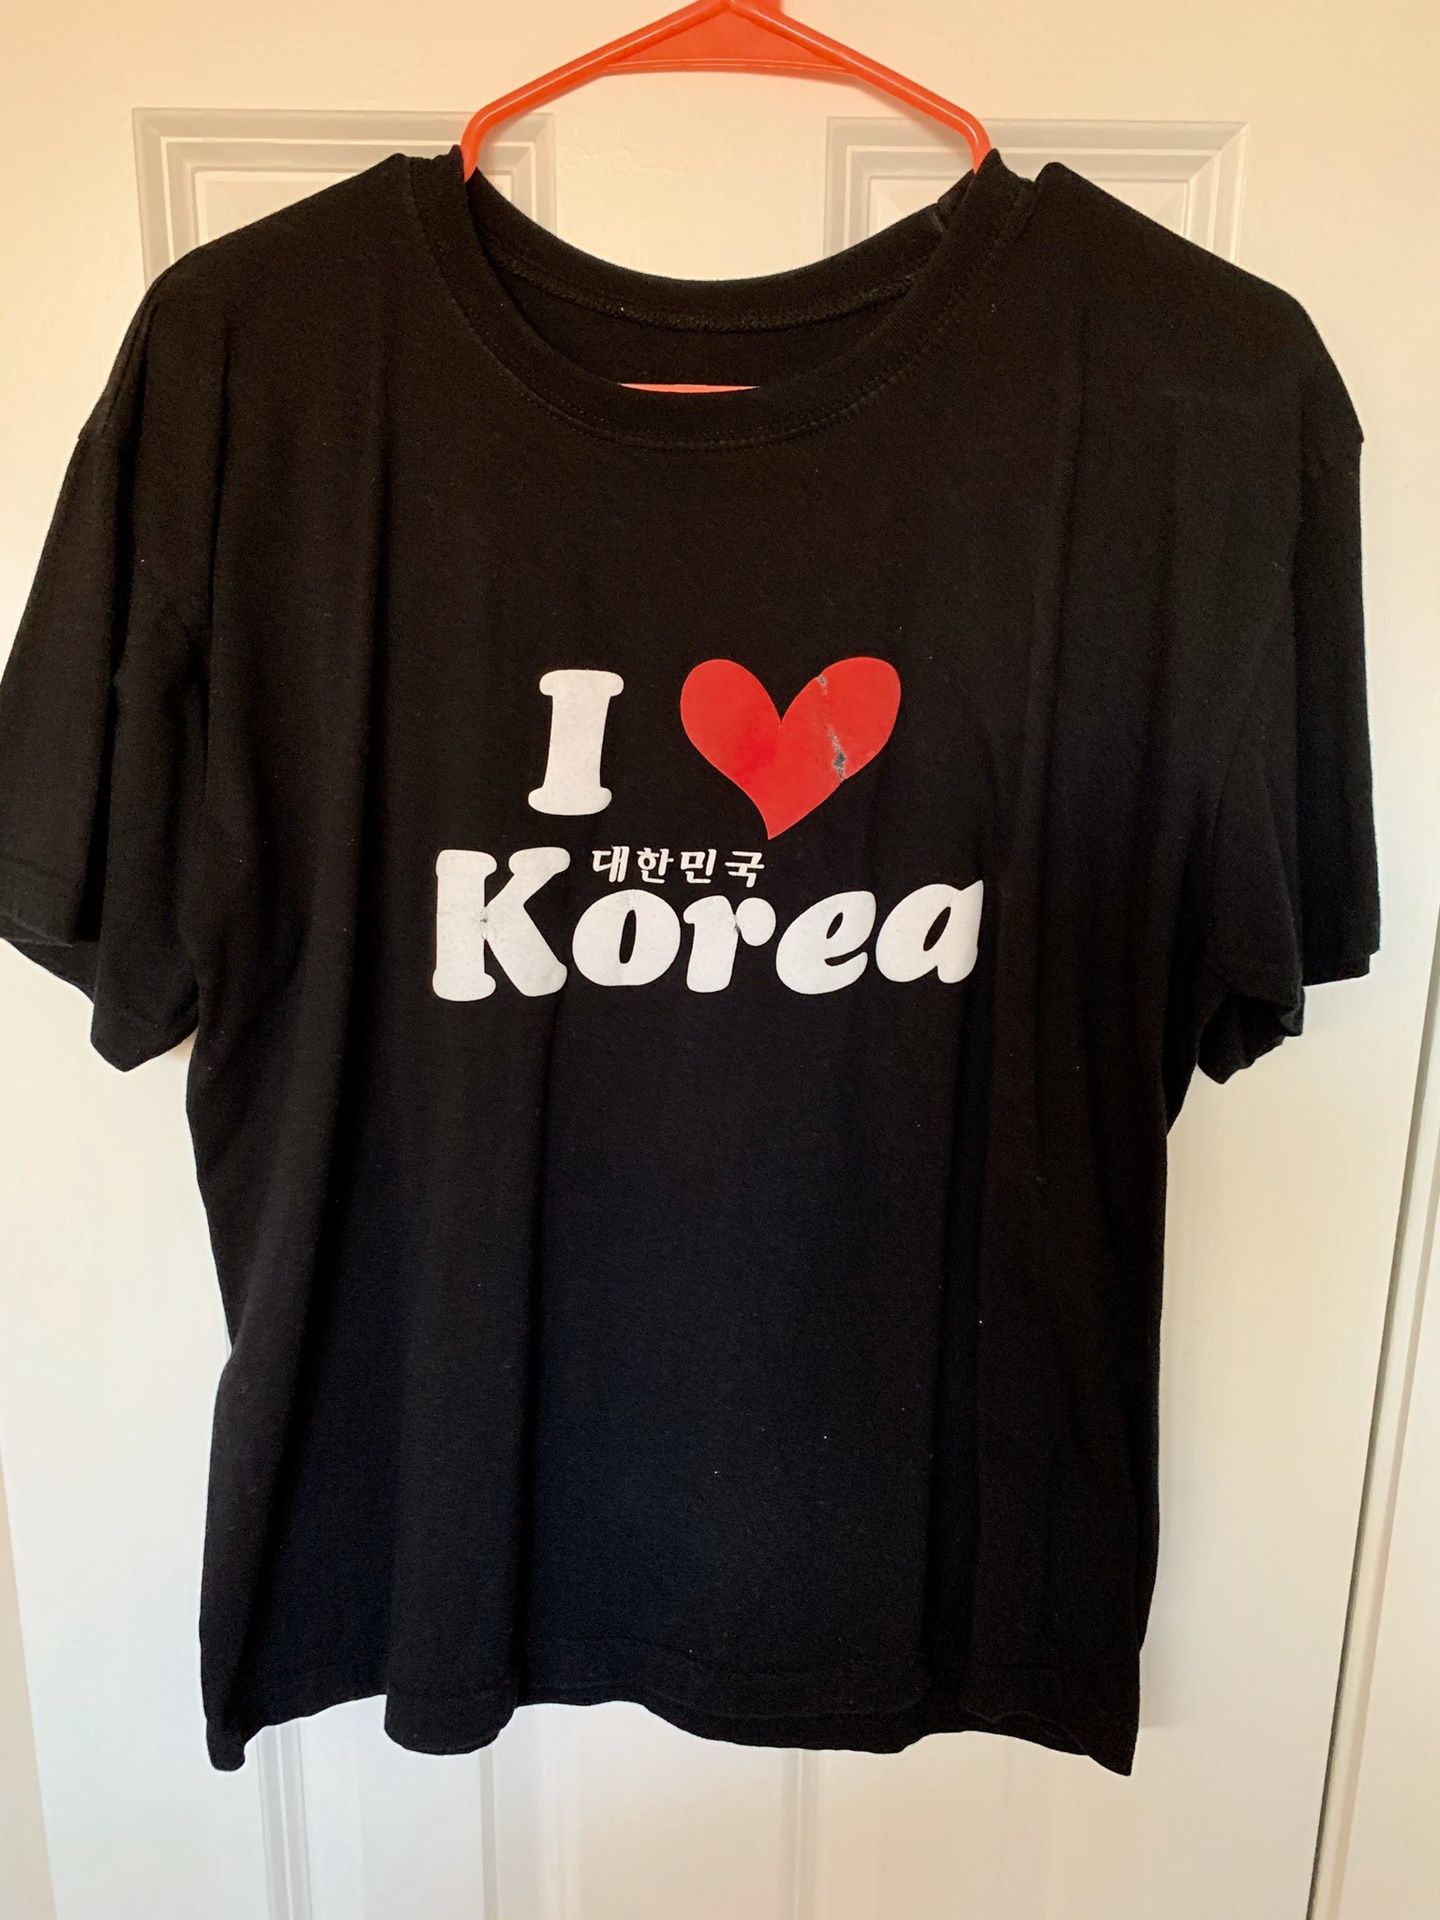 Graphic Tee “I love Korea”